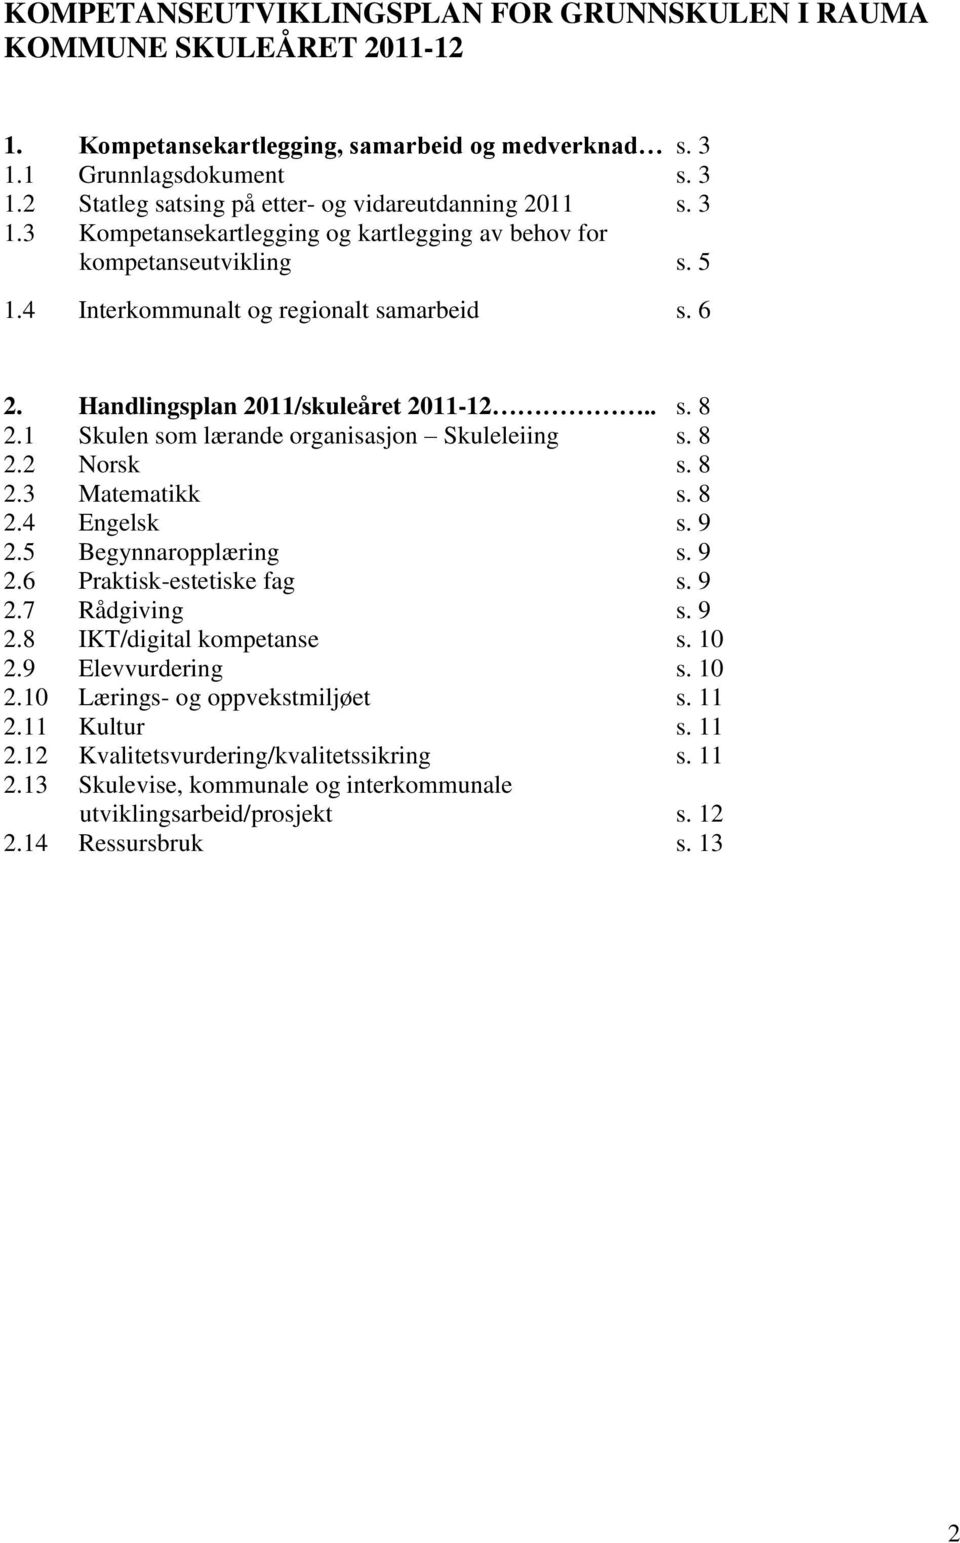 1 Skulen som lærande organisasjon Skuleleiing s. 8 2.2 Norsk s. 8 2.3 Matematikk s. 8 2.4 Engelsk s. 9 2.5 Begynnaropplæring s. 9 2.6 Praktisk-estetiske fag s. 9 2.7 Rådgiving s. 9 2.8 /digital kompetanse s.